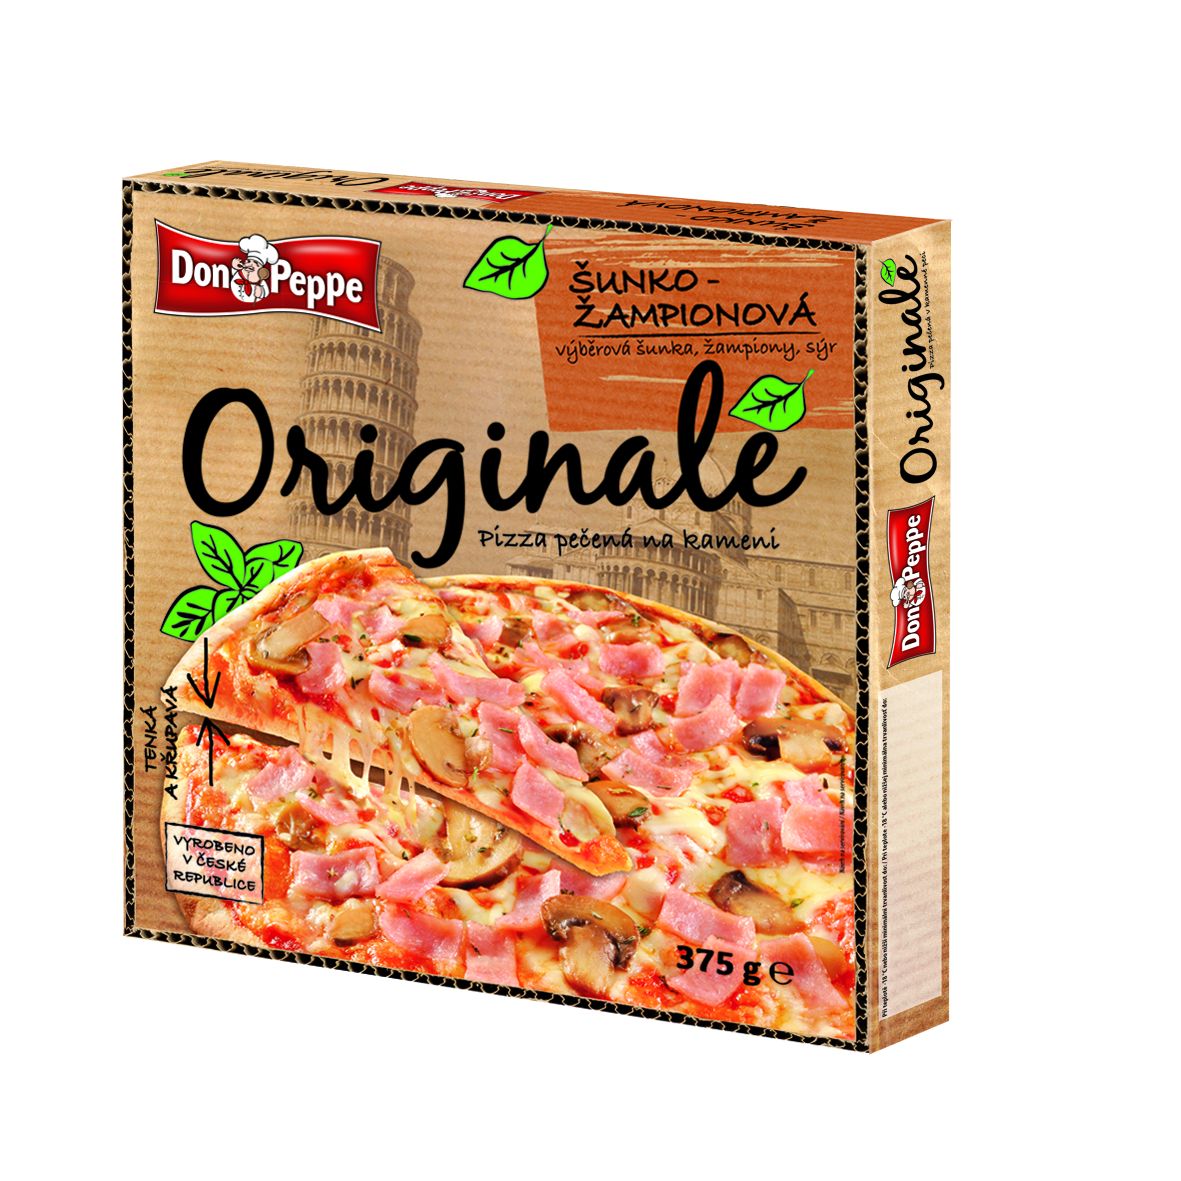 Don Peppe Originale pizza Šunko-žampionová 375 g